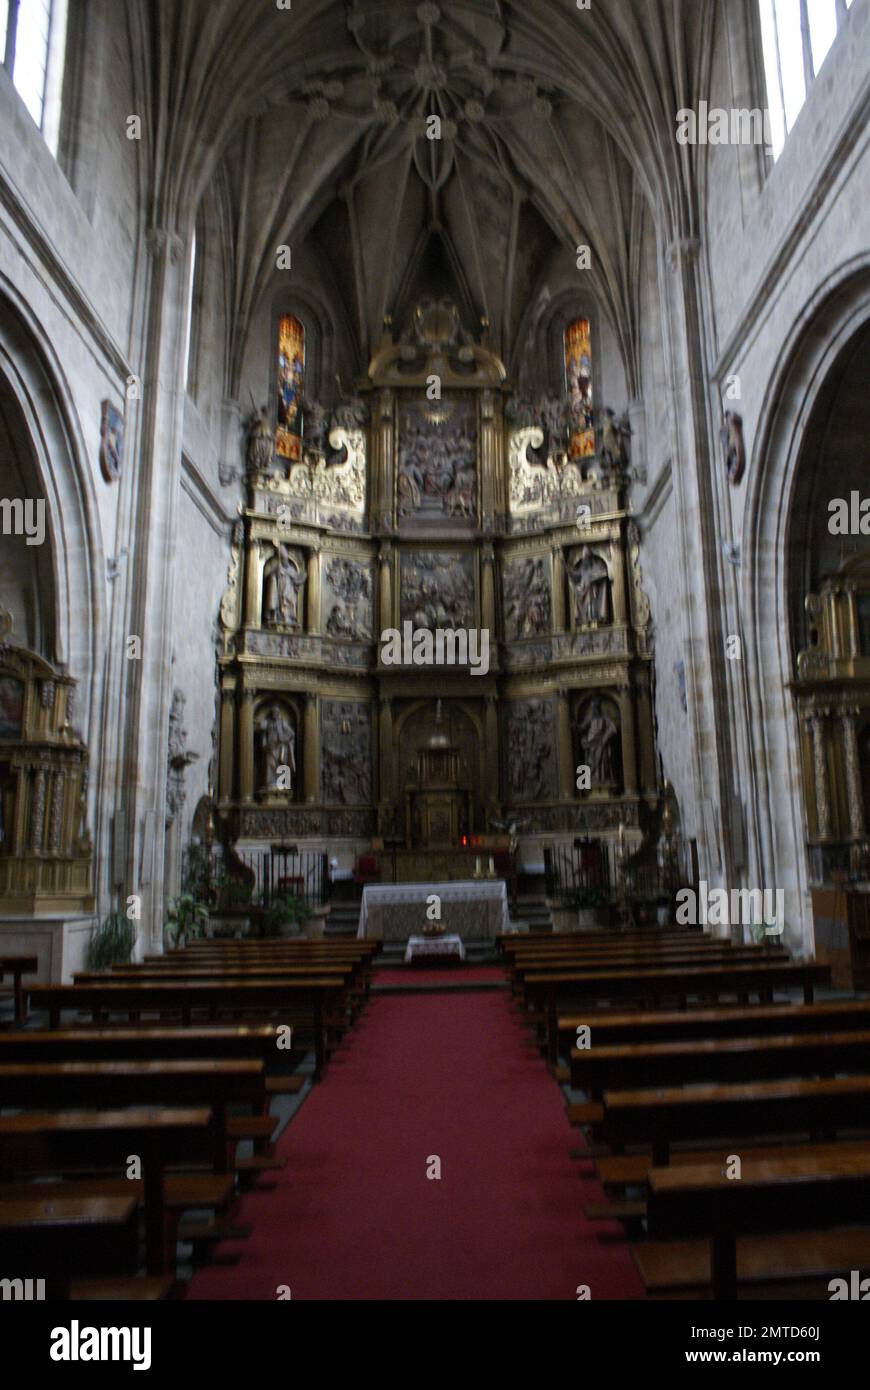 La Iglesia de Sancti Spiritus de Salamanca, es un templo Católico perteneciente al estilo del Gótico tardío, y es el único resto que sobrevive en la a Foto Stock